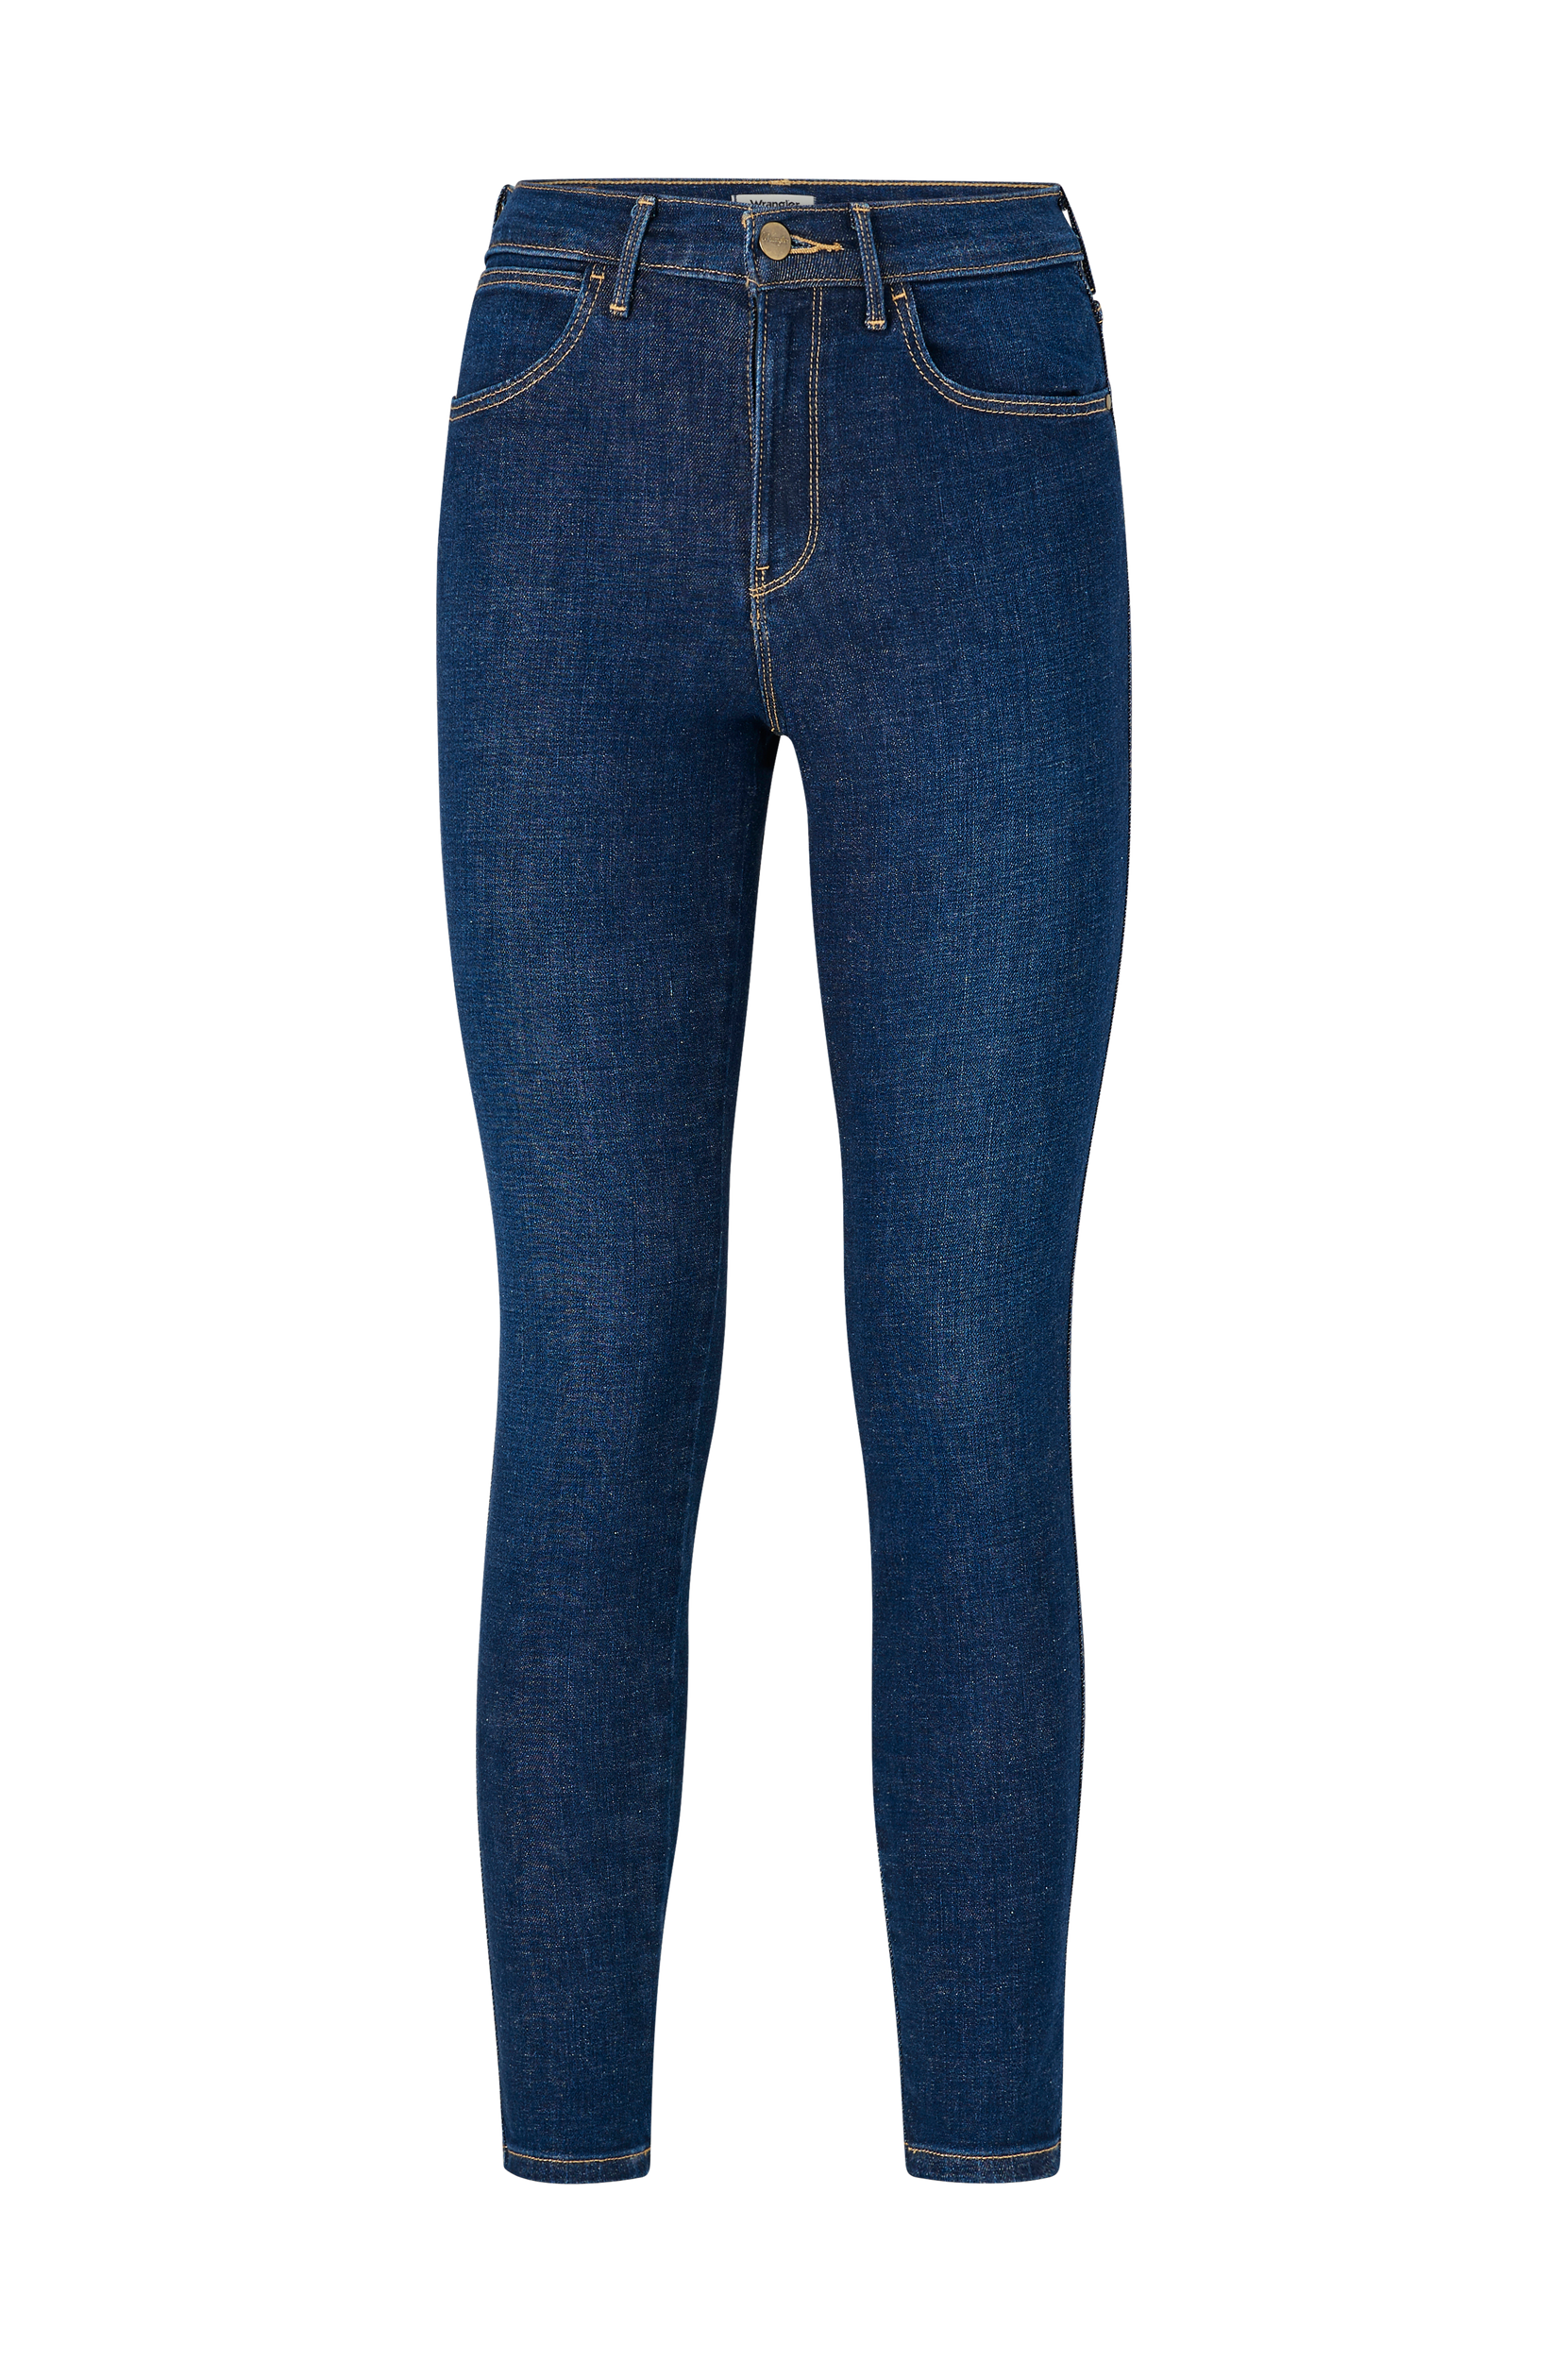 Wrangler - Jeans High Rise Skinny - Blå - W26/L32